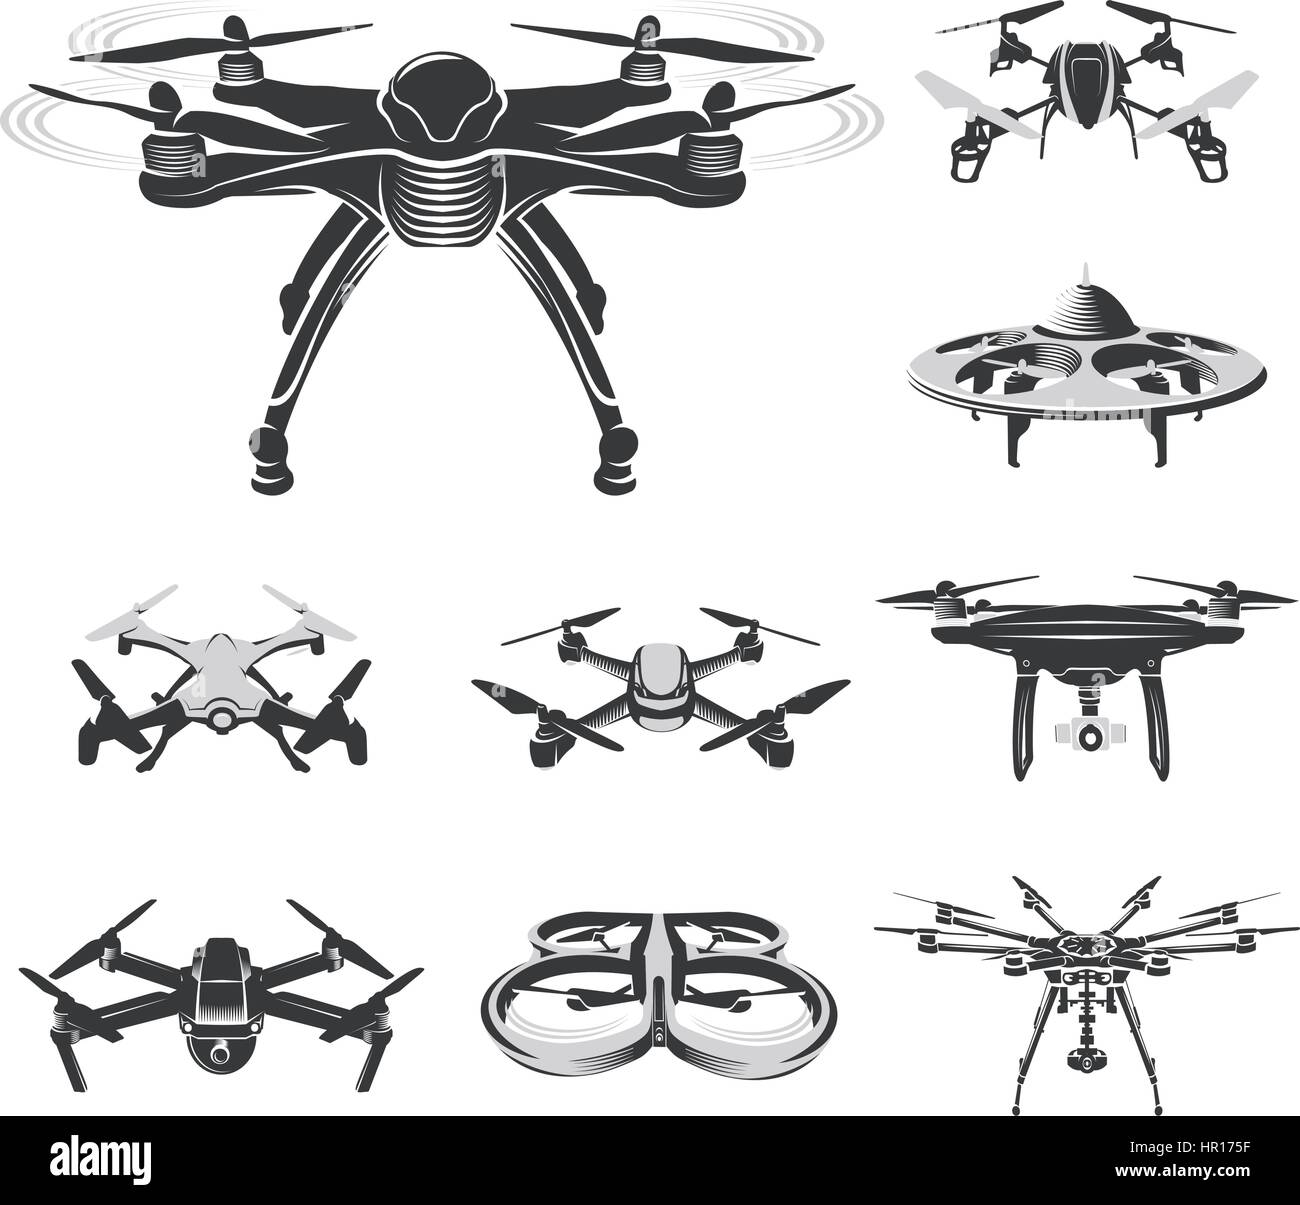 Rc drone quadcopter isolés, collection, fpv logo logotype de l'appareil illustration vecteur Illustration de Vecteur